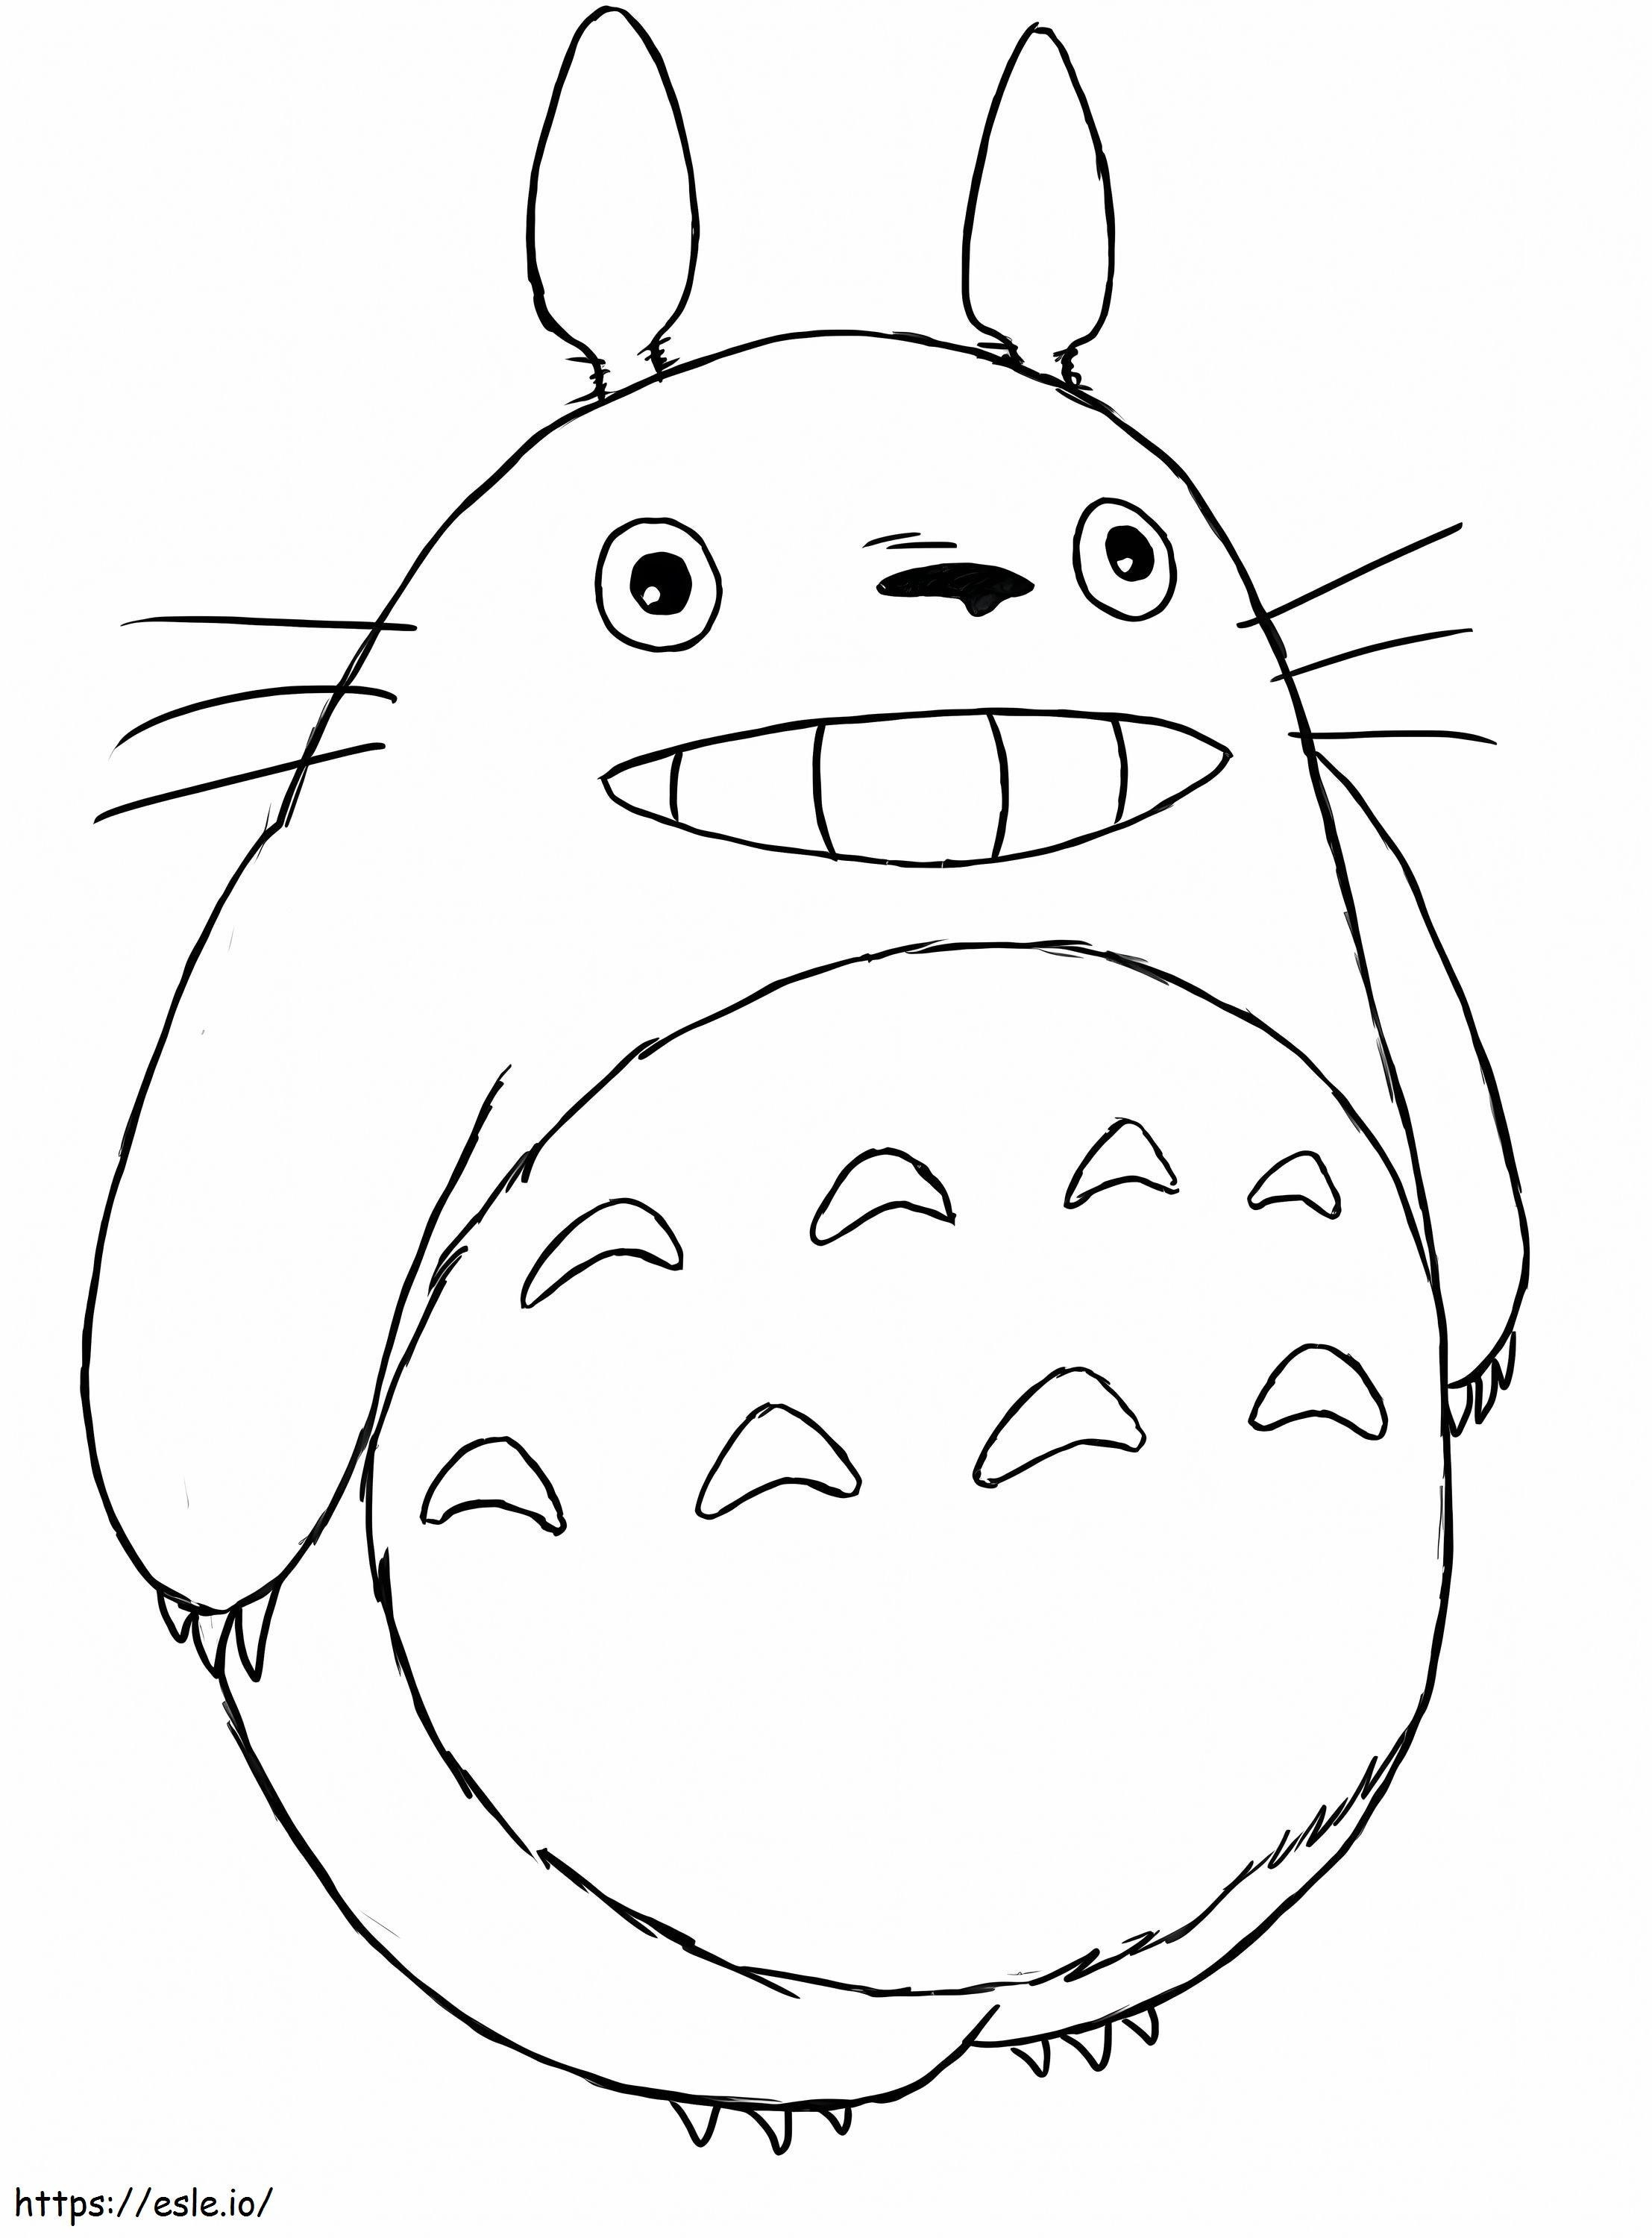 1552895488 760B8288 760B8288 Luxury Totoro Bezpłatne pobieranie Coloriage Totoro kolorowanka